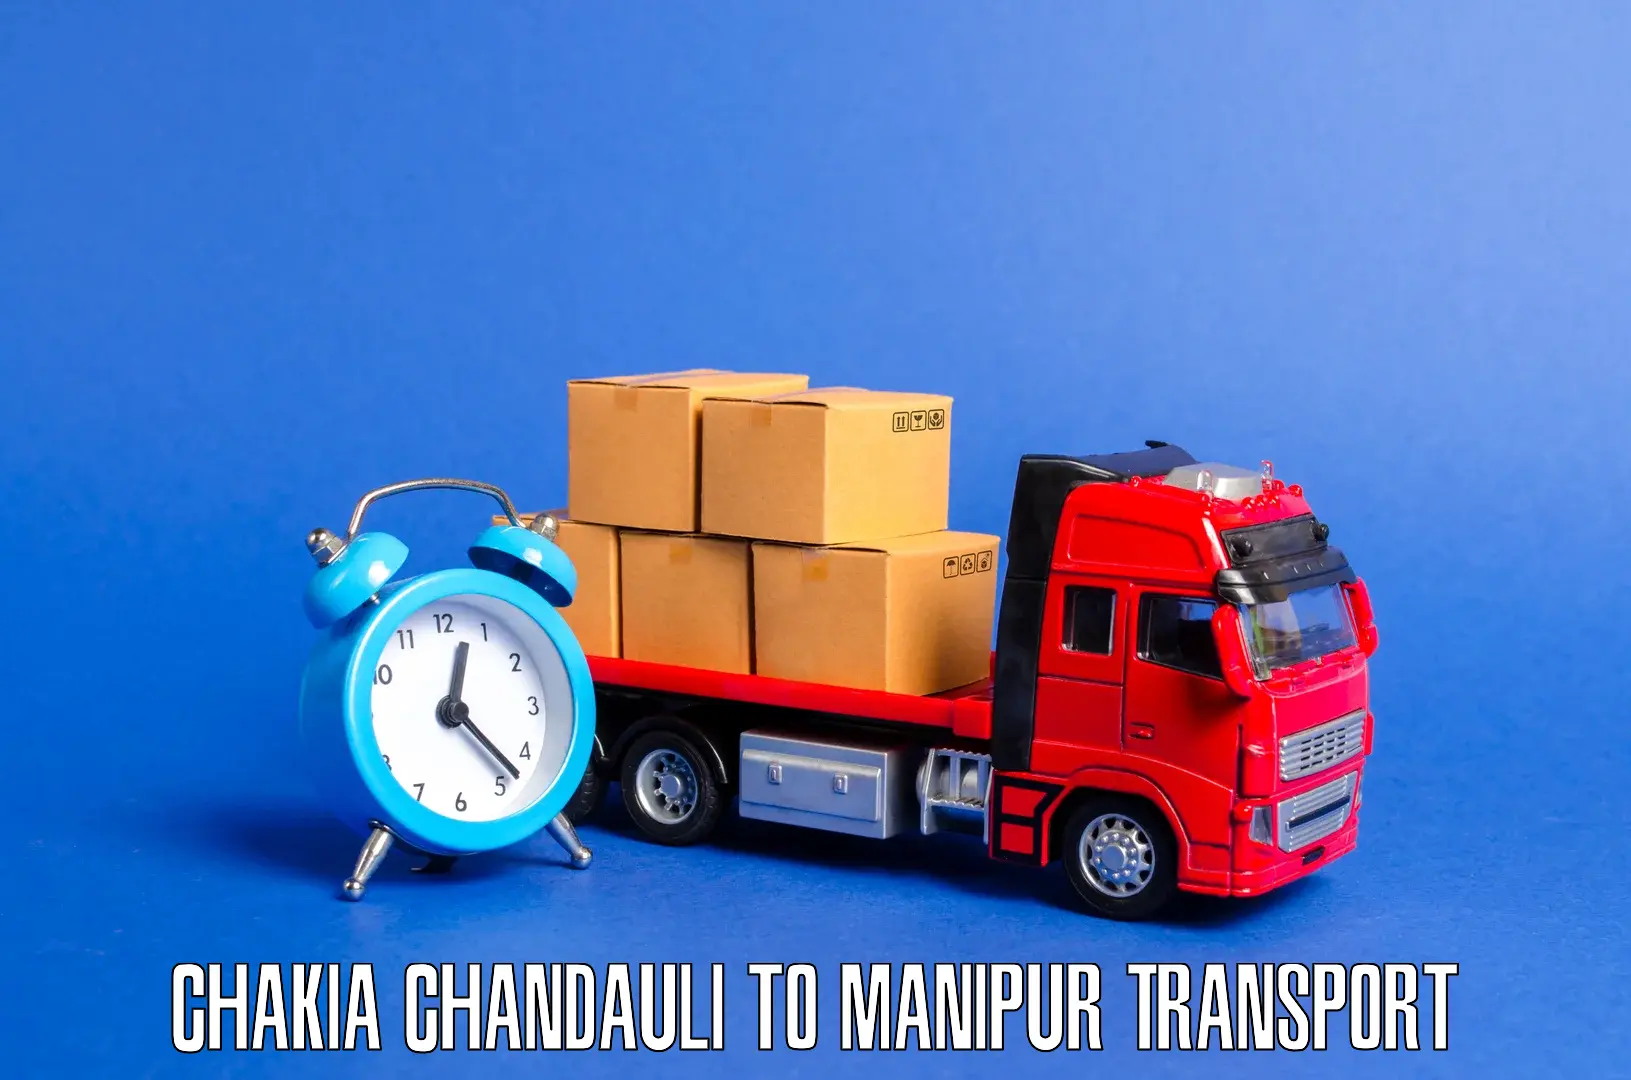 Furniture transport service Chakia Chandauli to Kanti